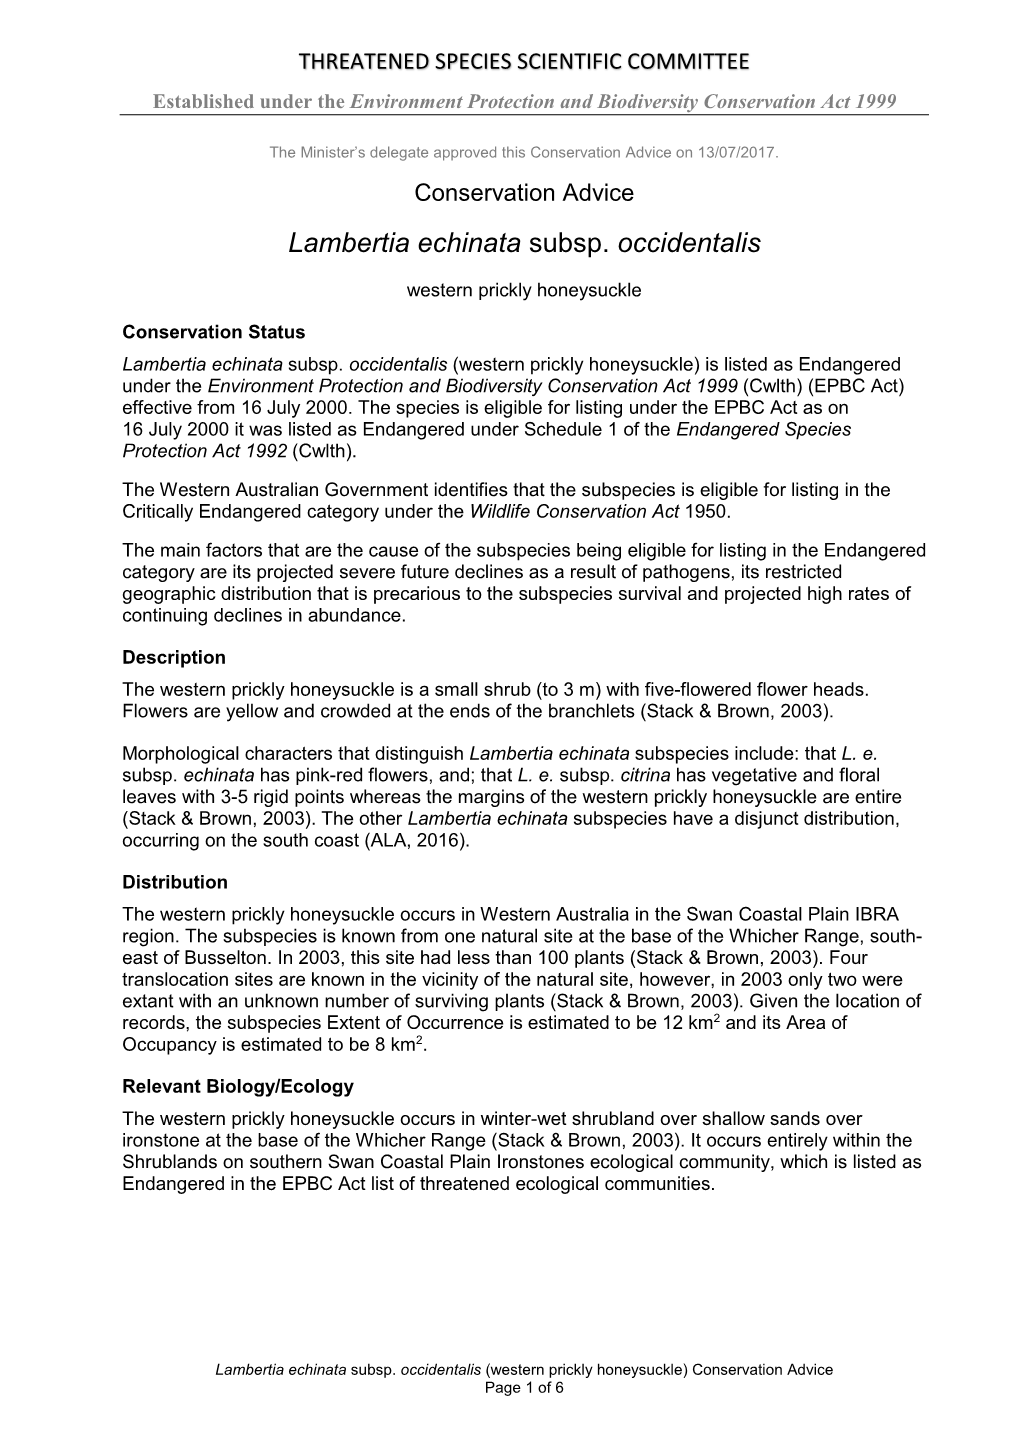 Conservation Advice Lambertia Echinata Subsp. Occidentalis